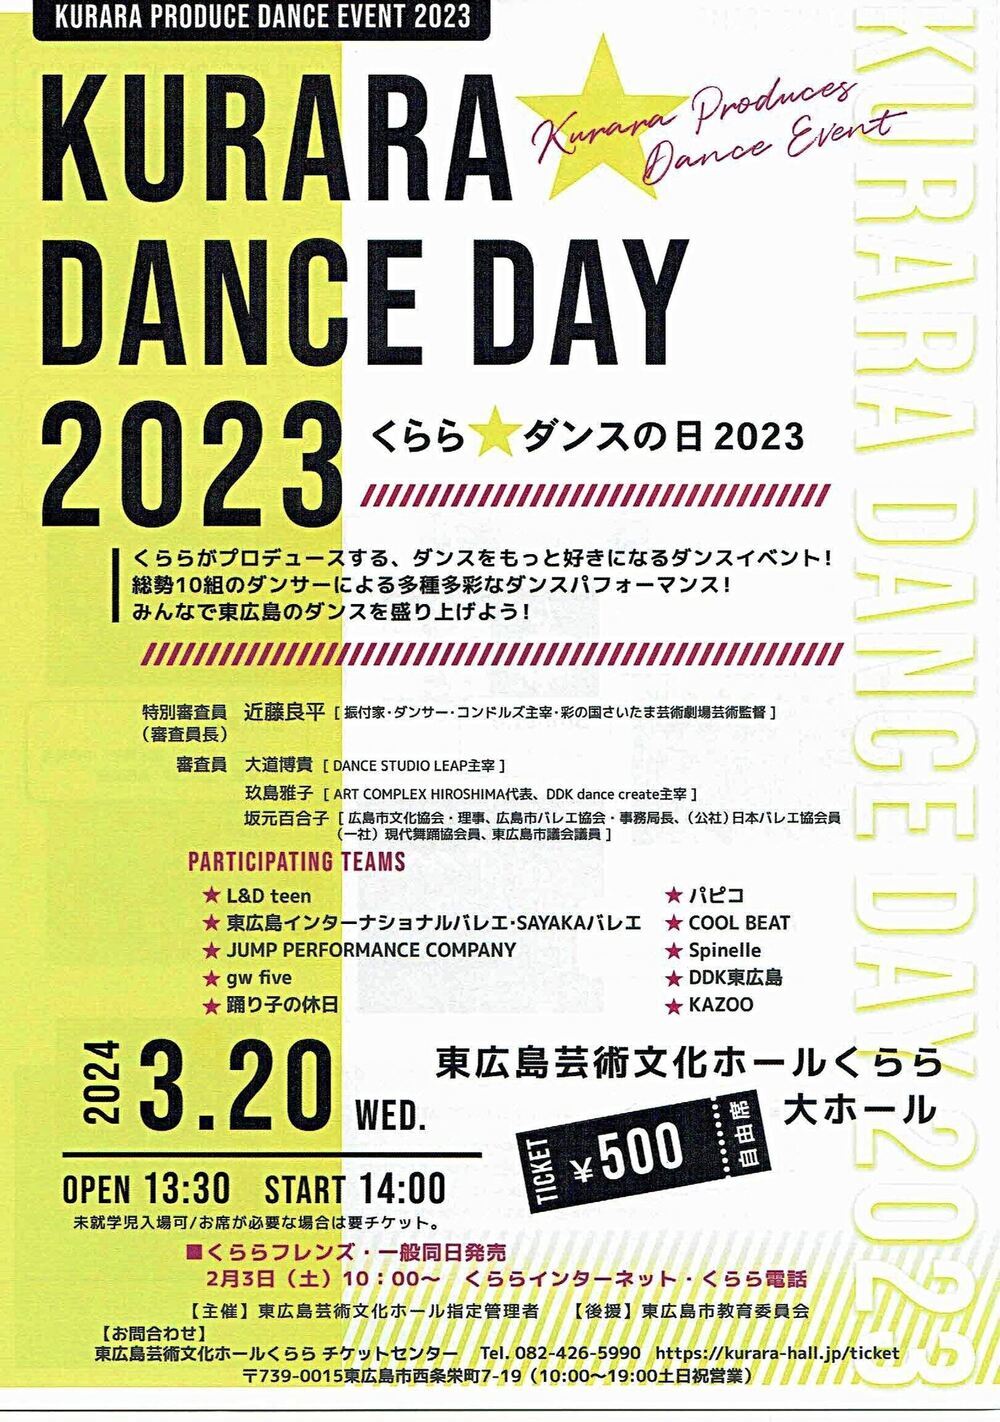 KURARA DANCE DAY 2023